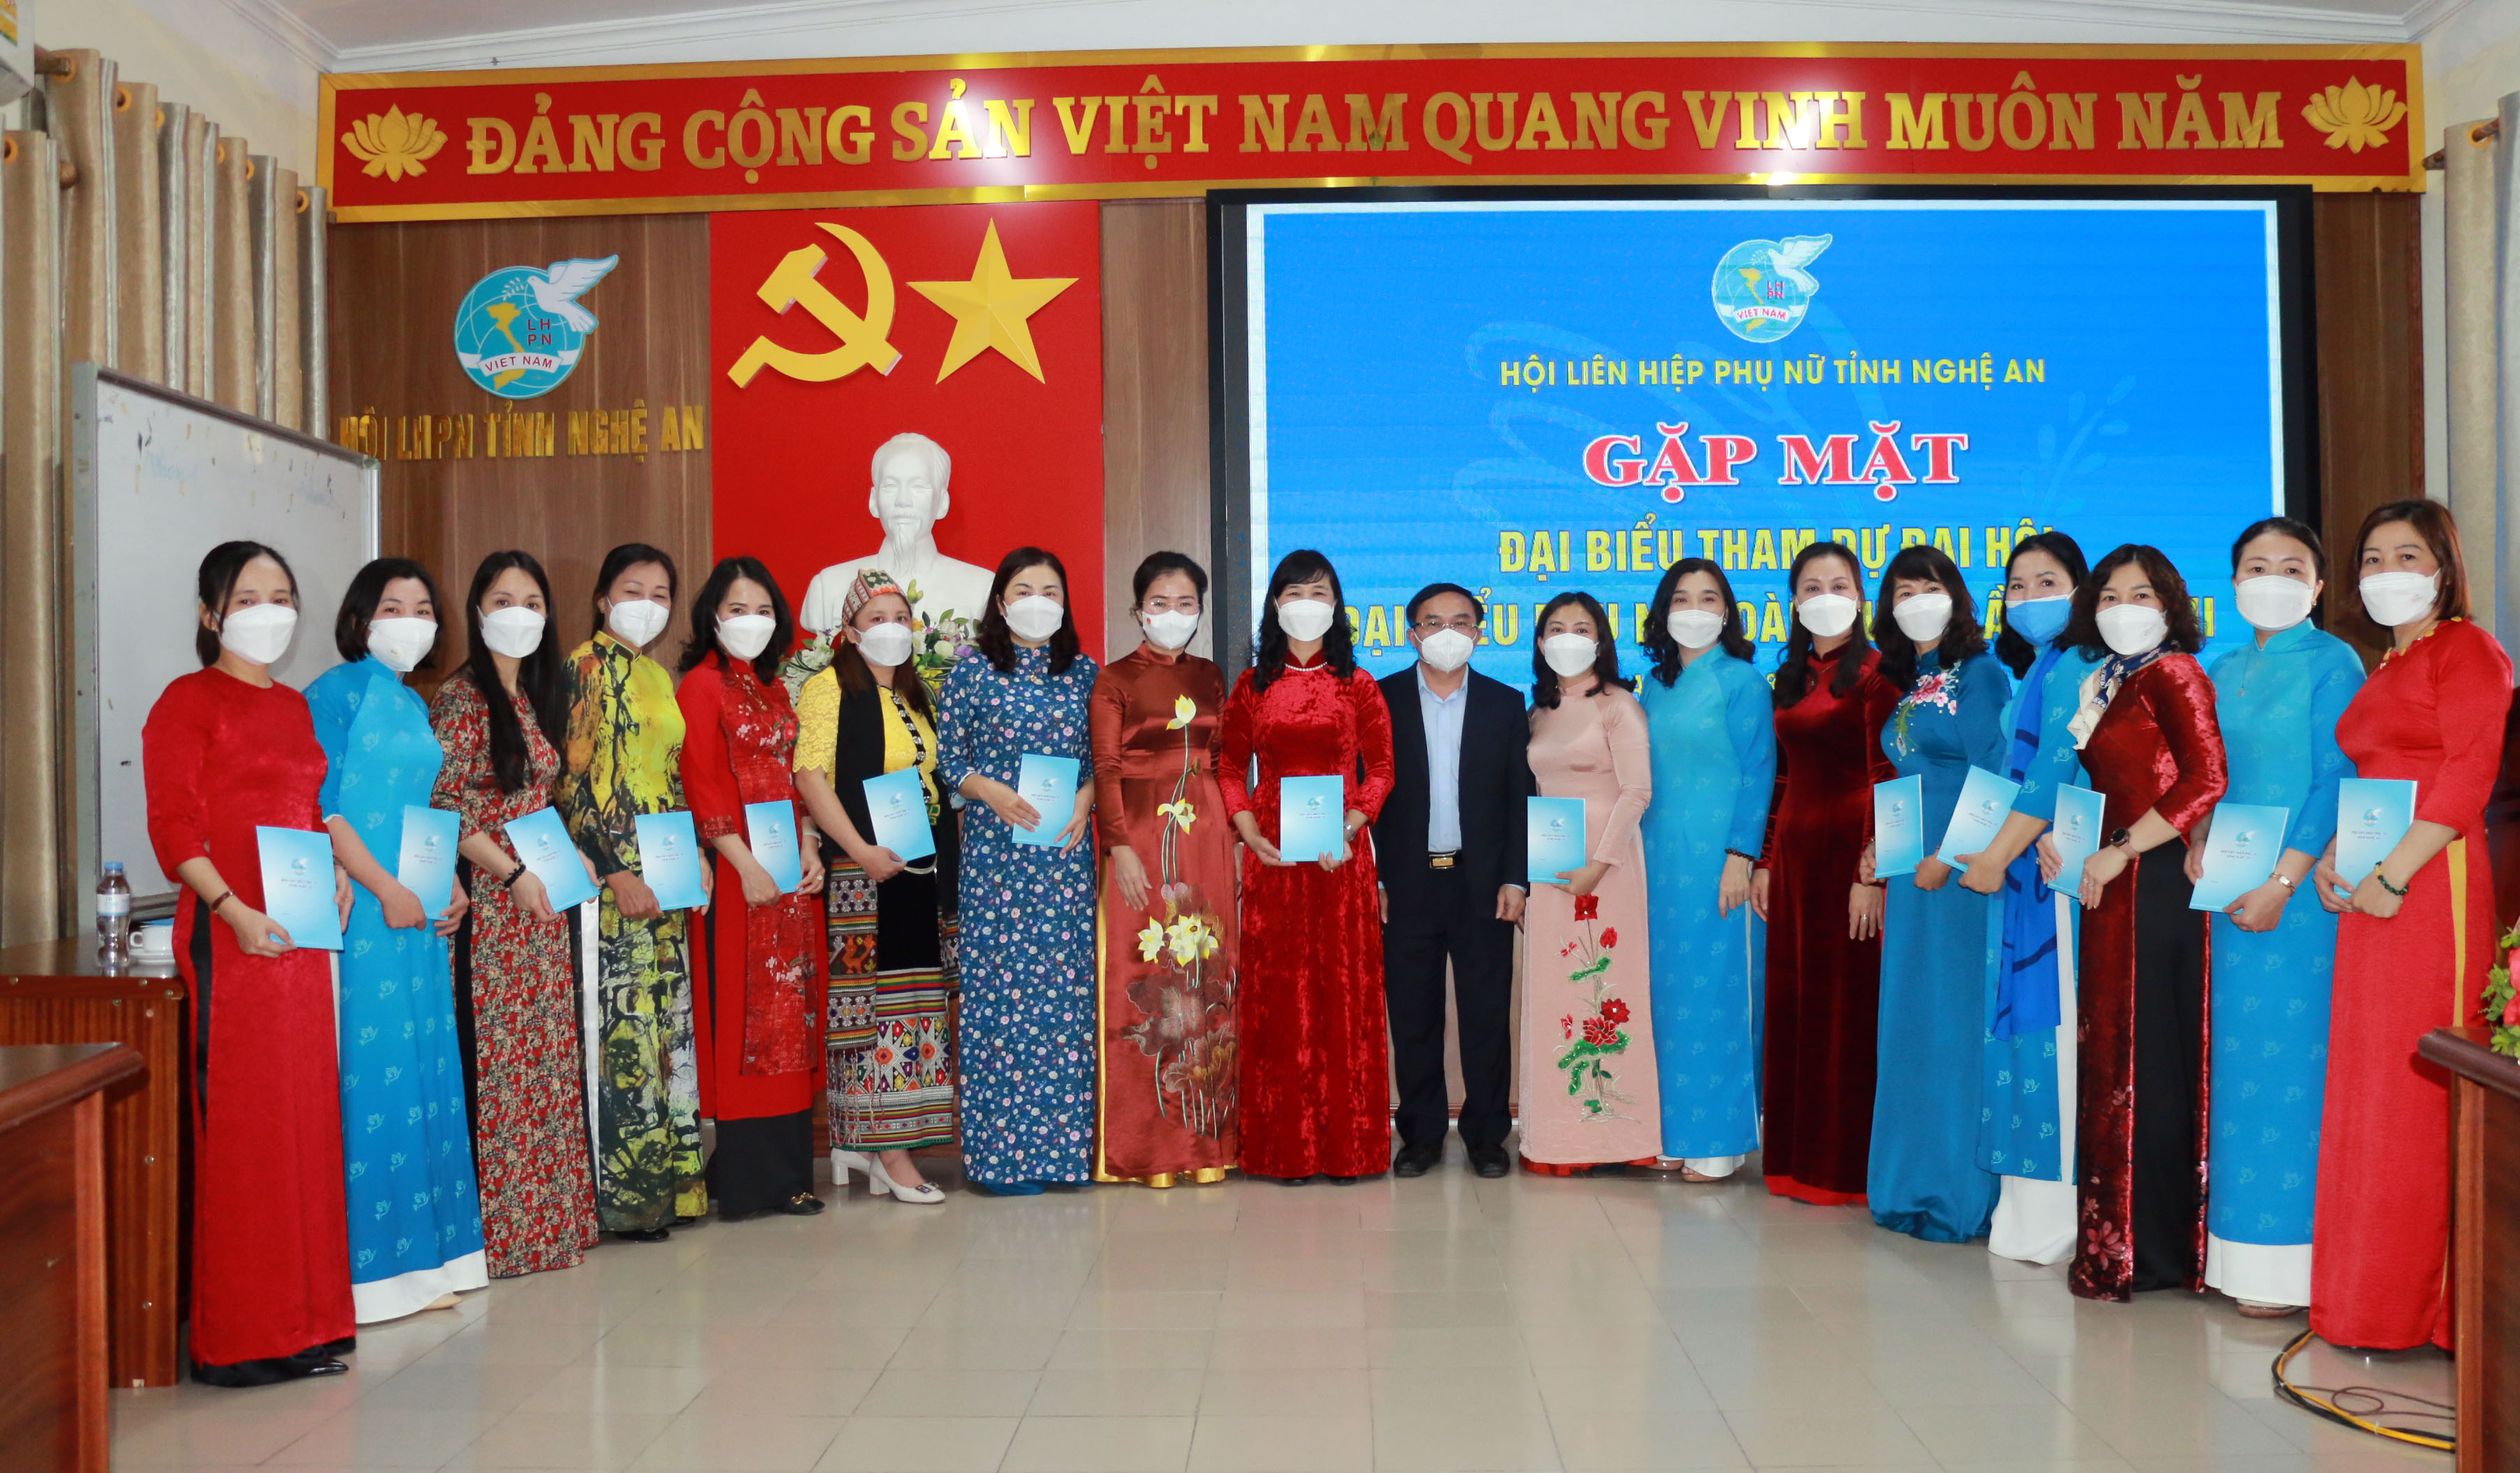 Đồng chí Ngọc Kim Nam và đồng chí Võ Thị Minh Sinh tặng quà cho các đại biểu tham dự đại hội. Ảnh: MH